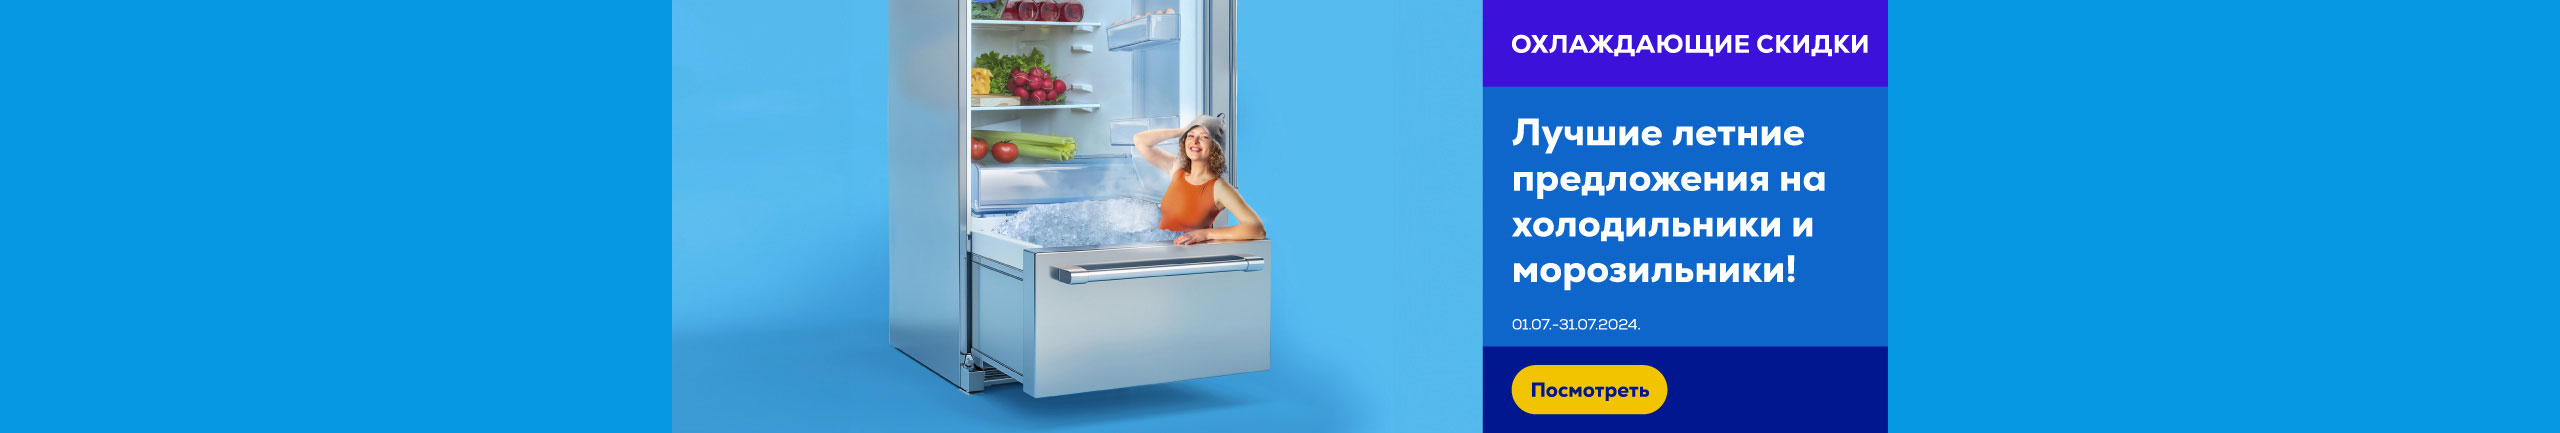 GR refrigerators 07-24